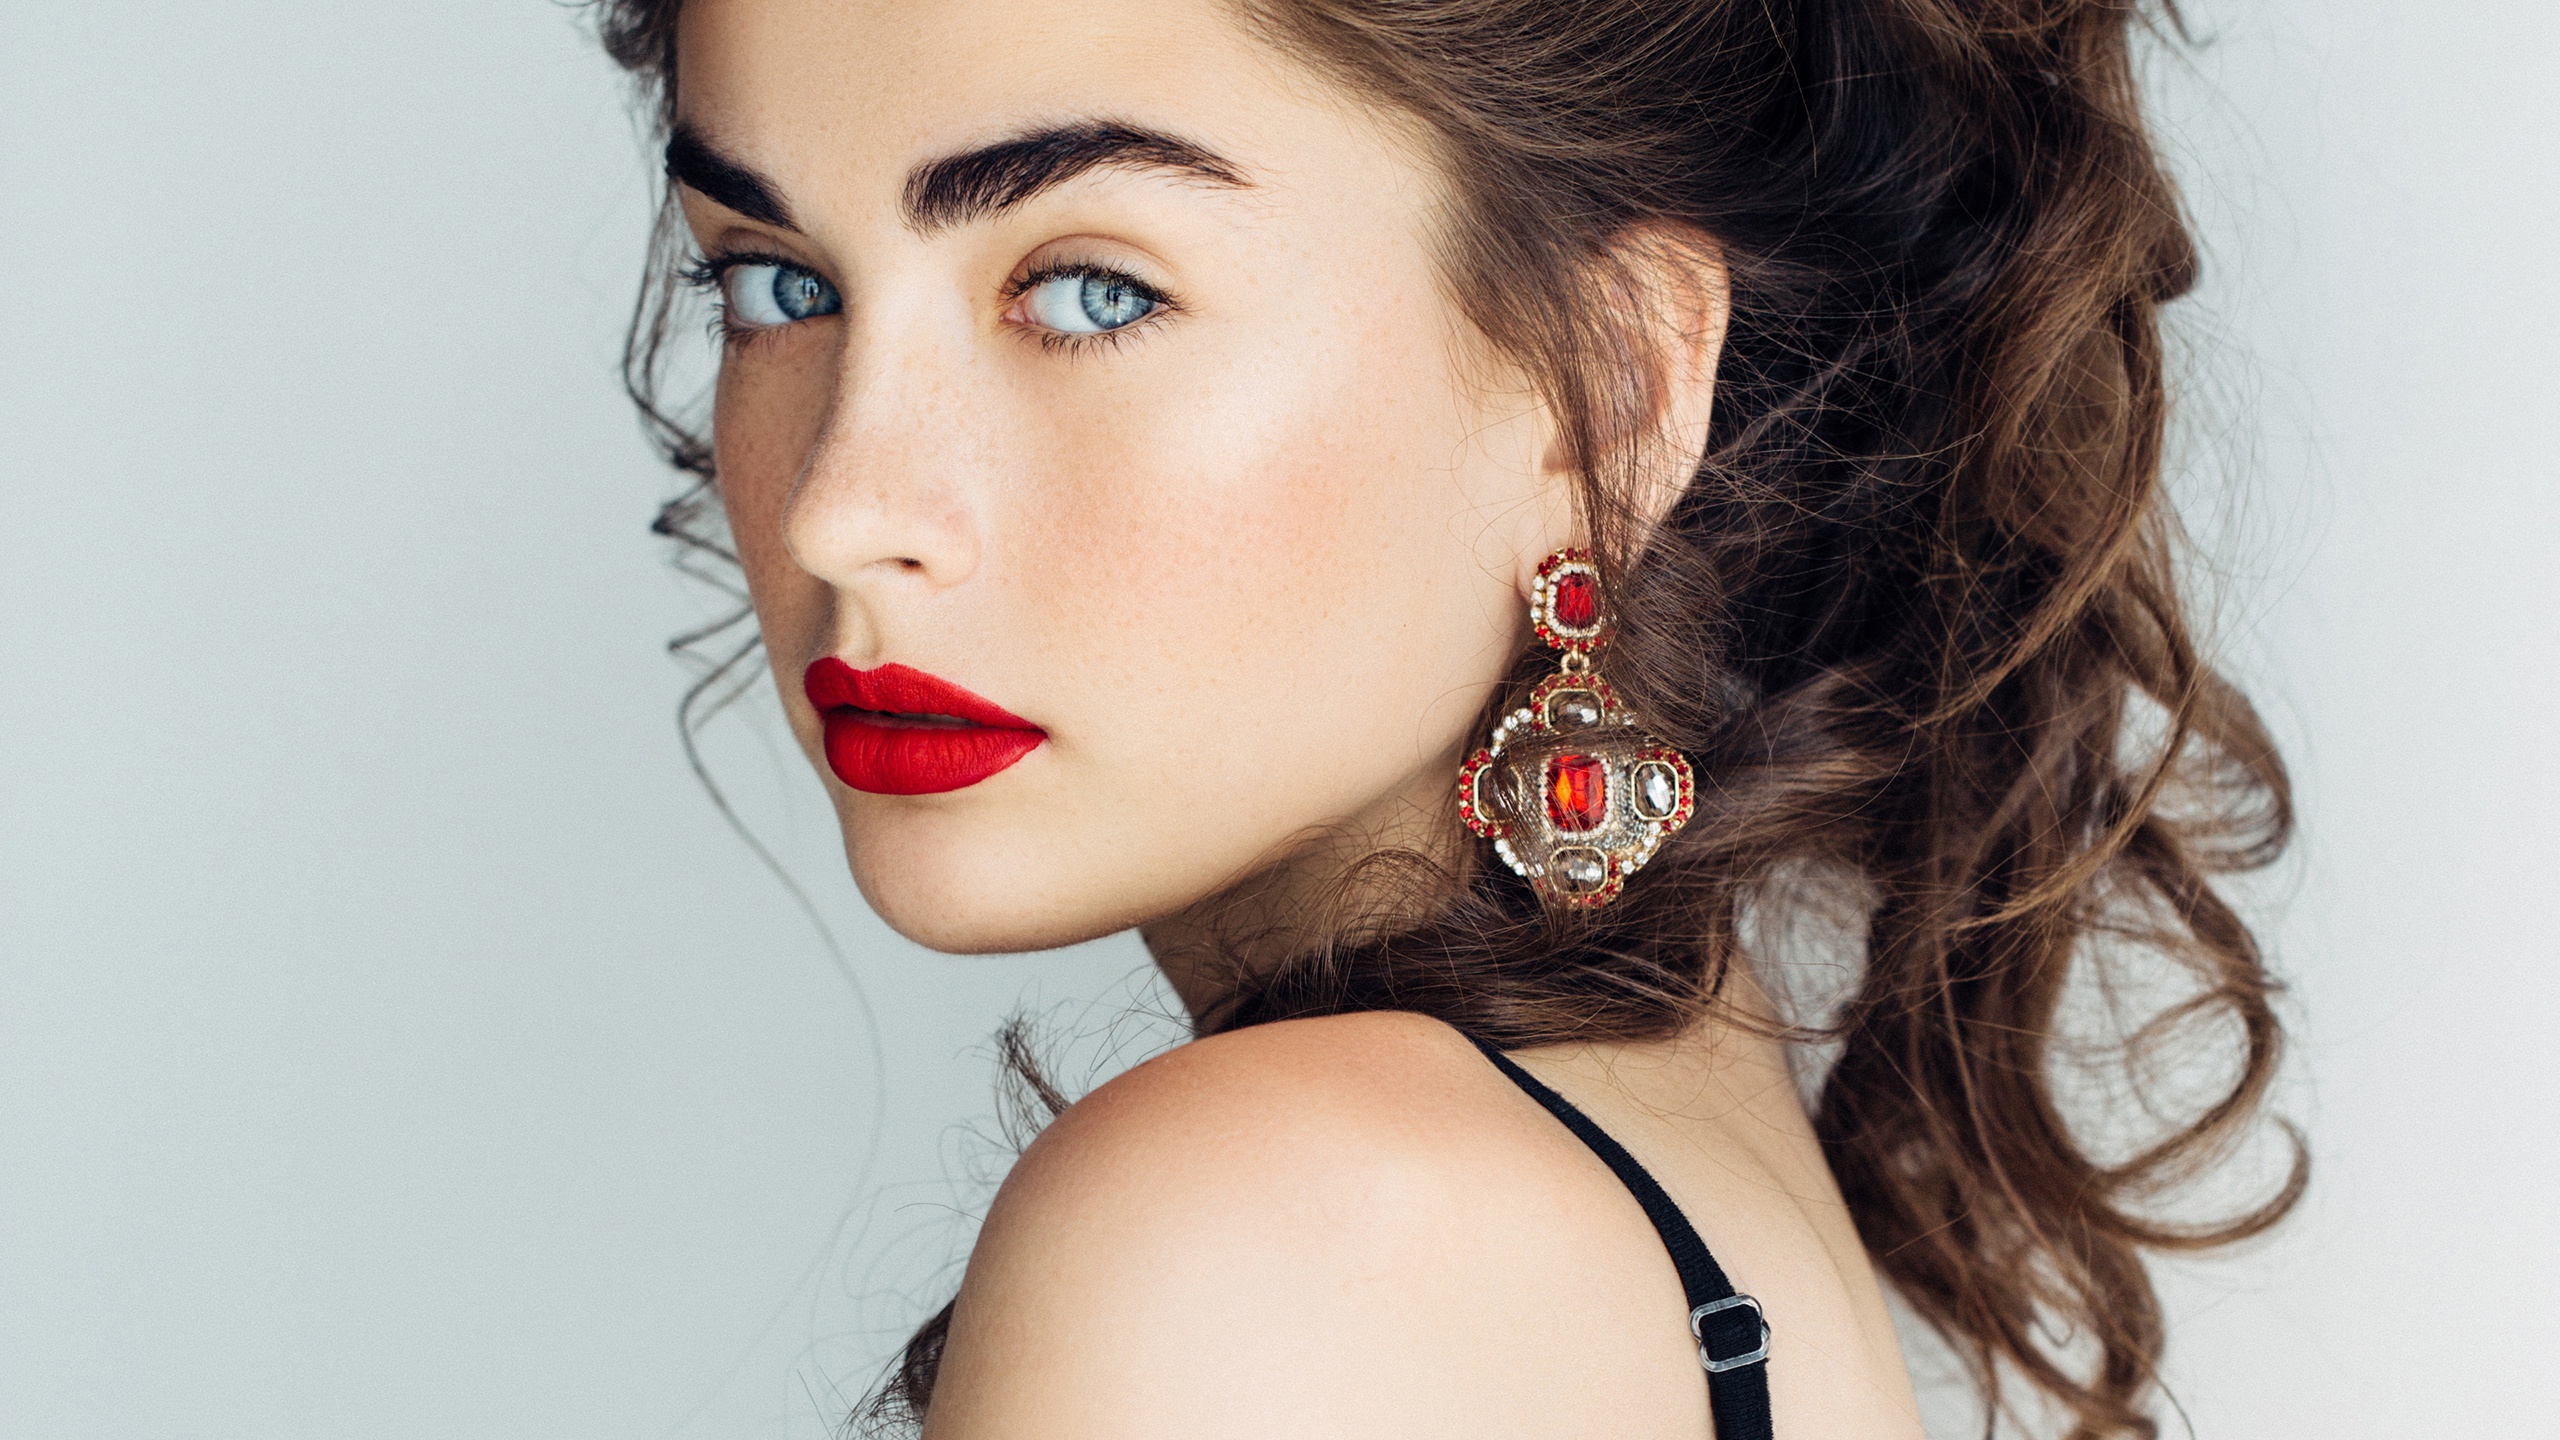 Makeup Women Model Face Red Lipstick Portrait Long Earings Blue Eyes 2560x1440